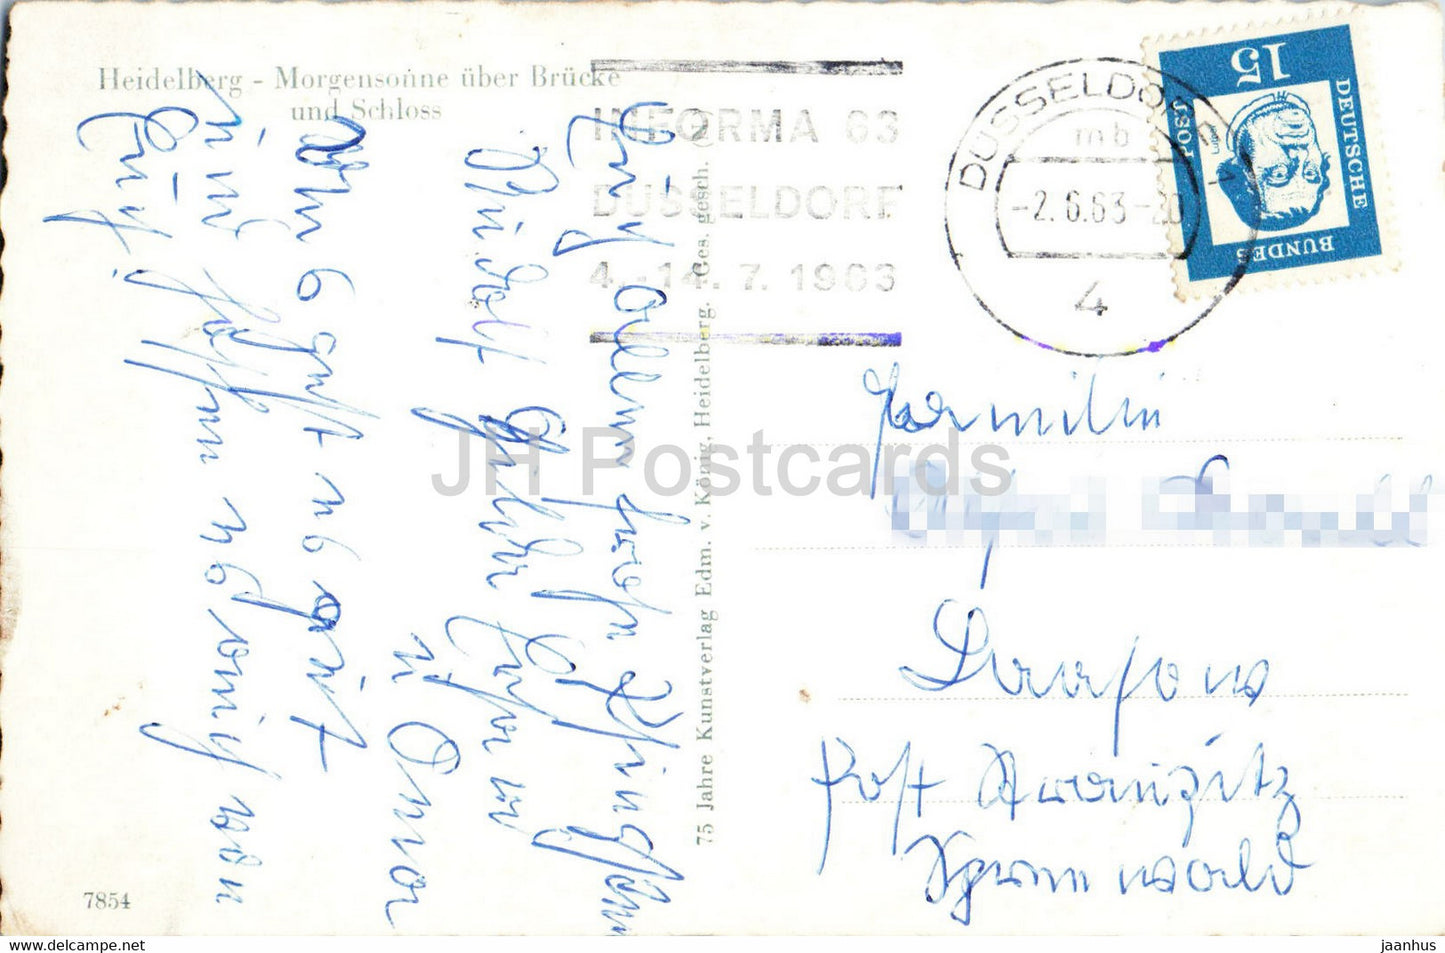 Heidelberg - Morgensonne über Brücke und Schloss - Schloss - alte Postkarte - 1963 - Deutschland - gebraucht